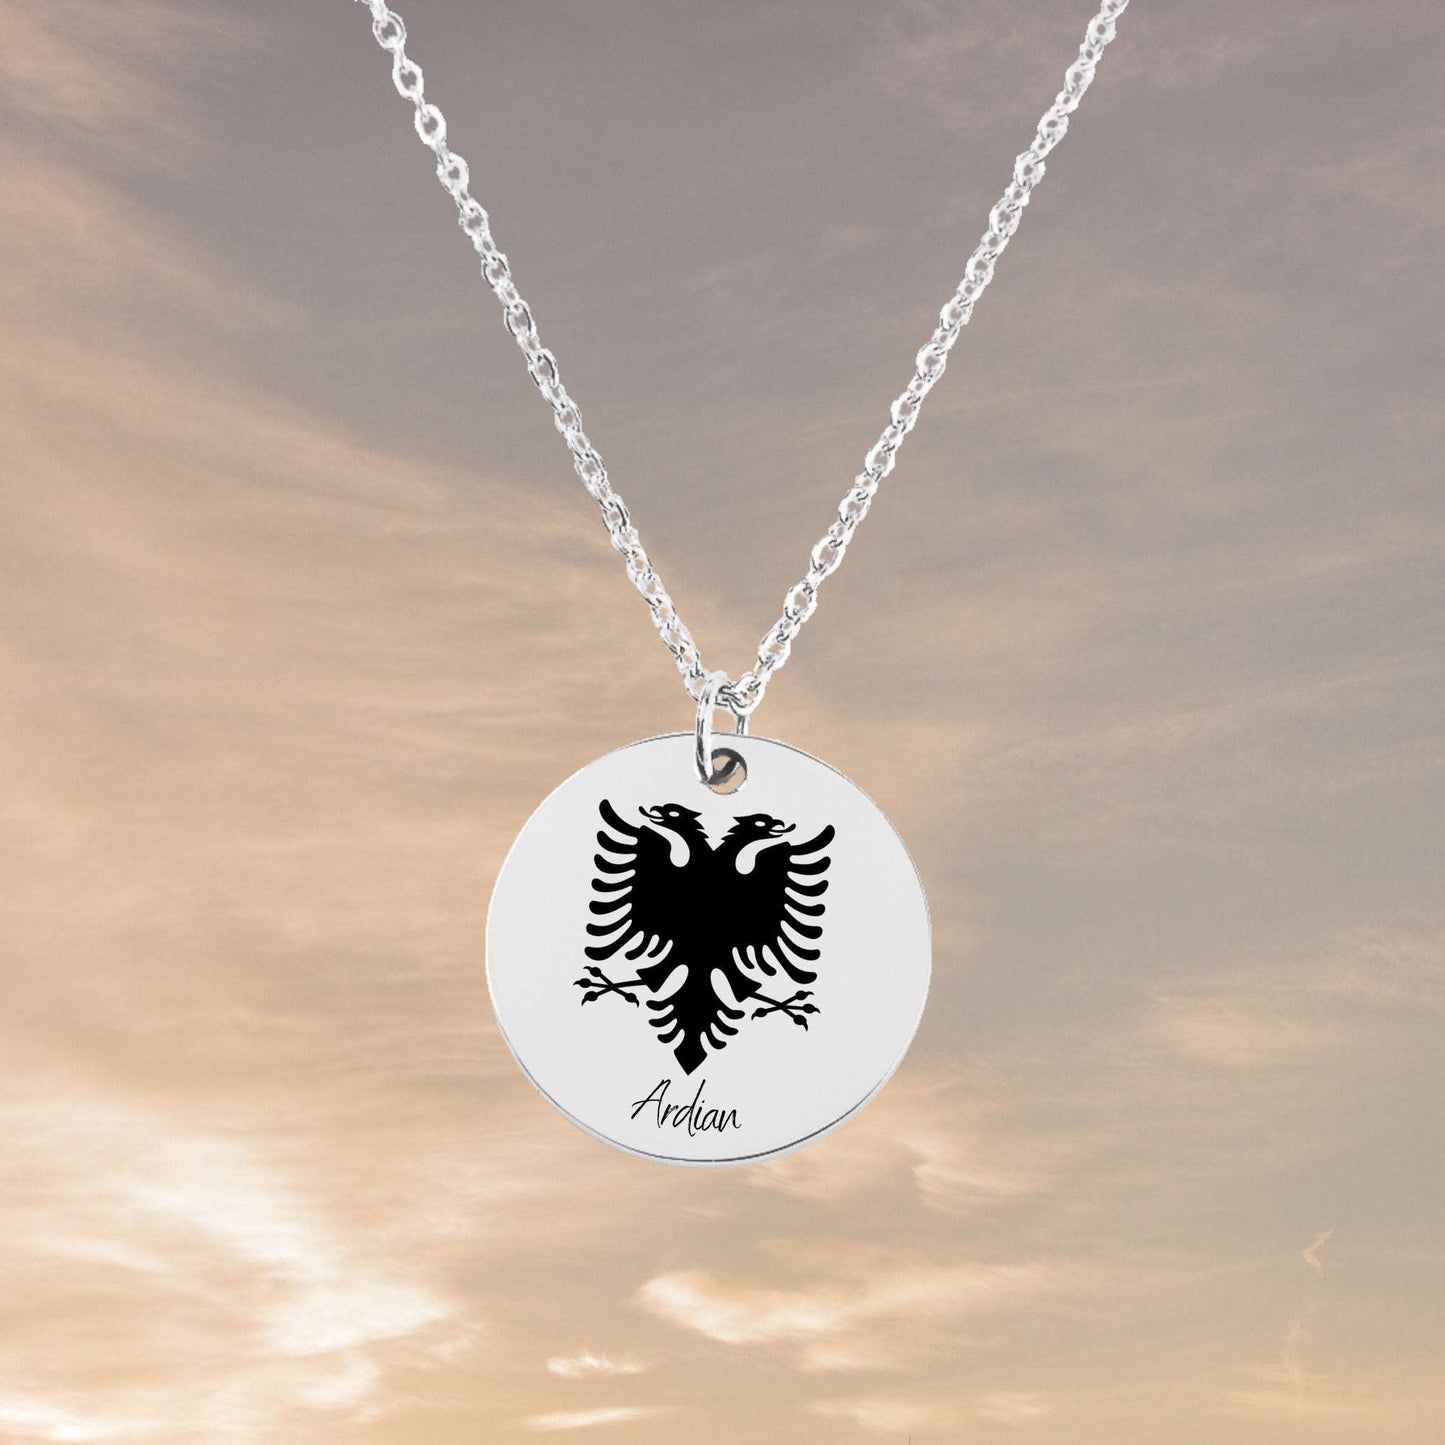 Albania Eagle Emblem - Personalized Gift